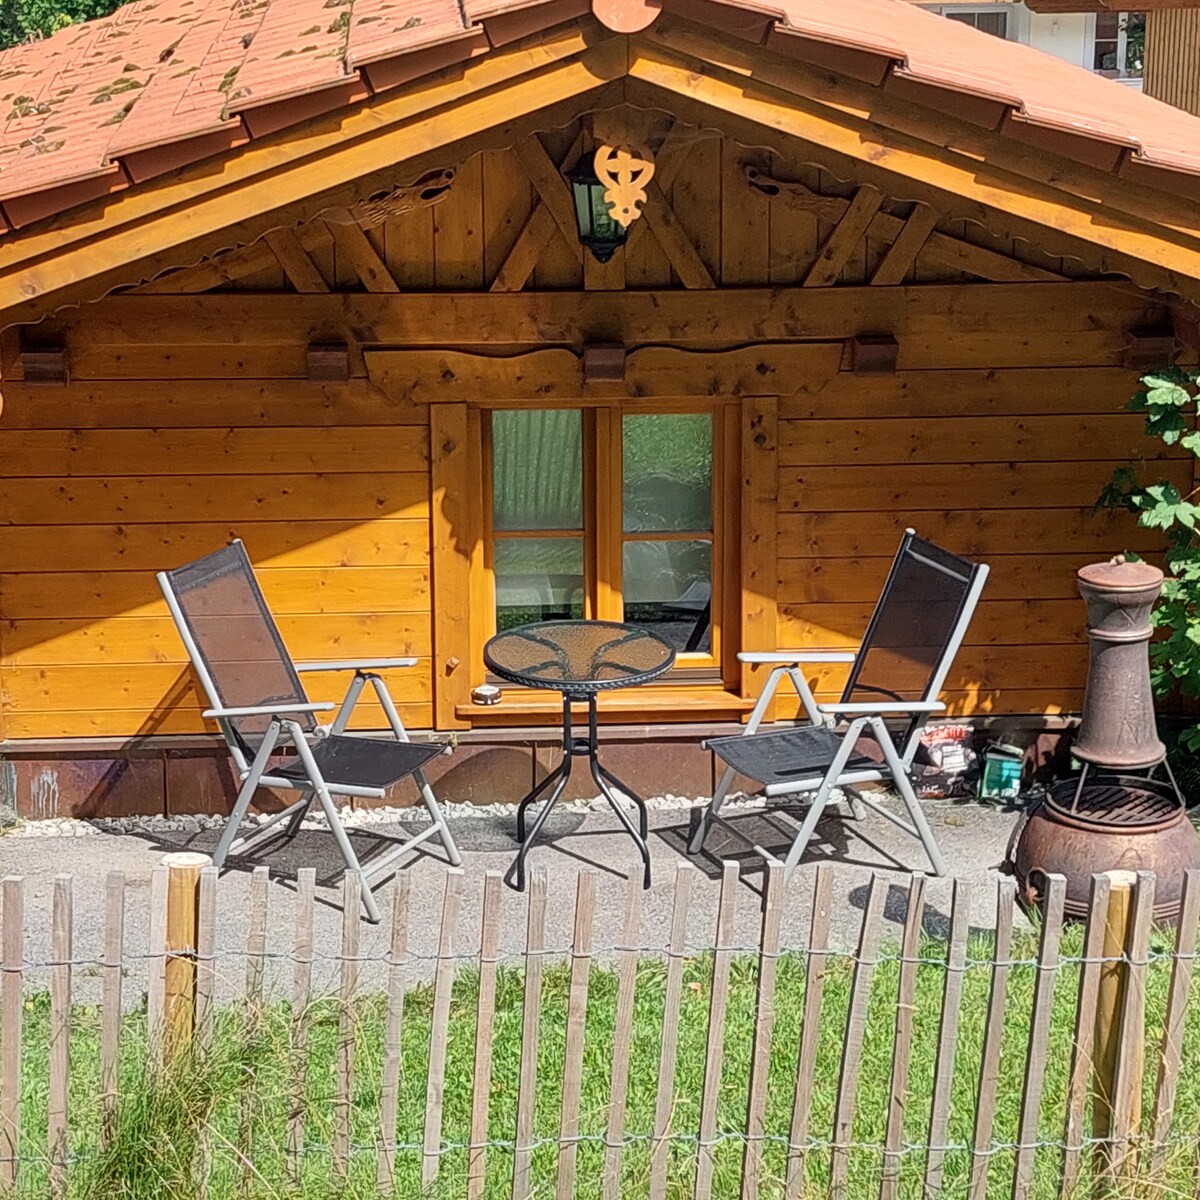 Kargl 's alpine hut